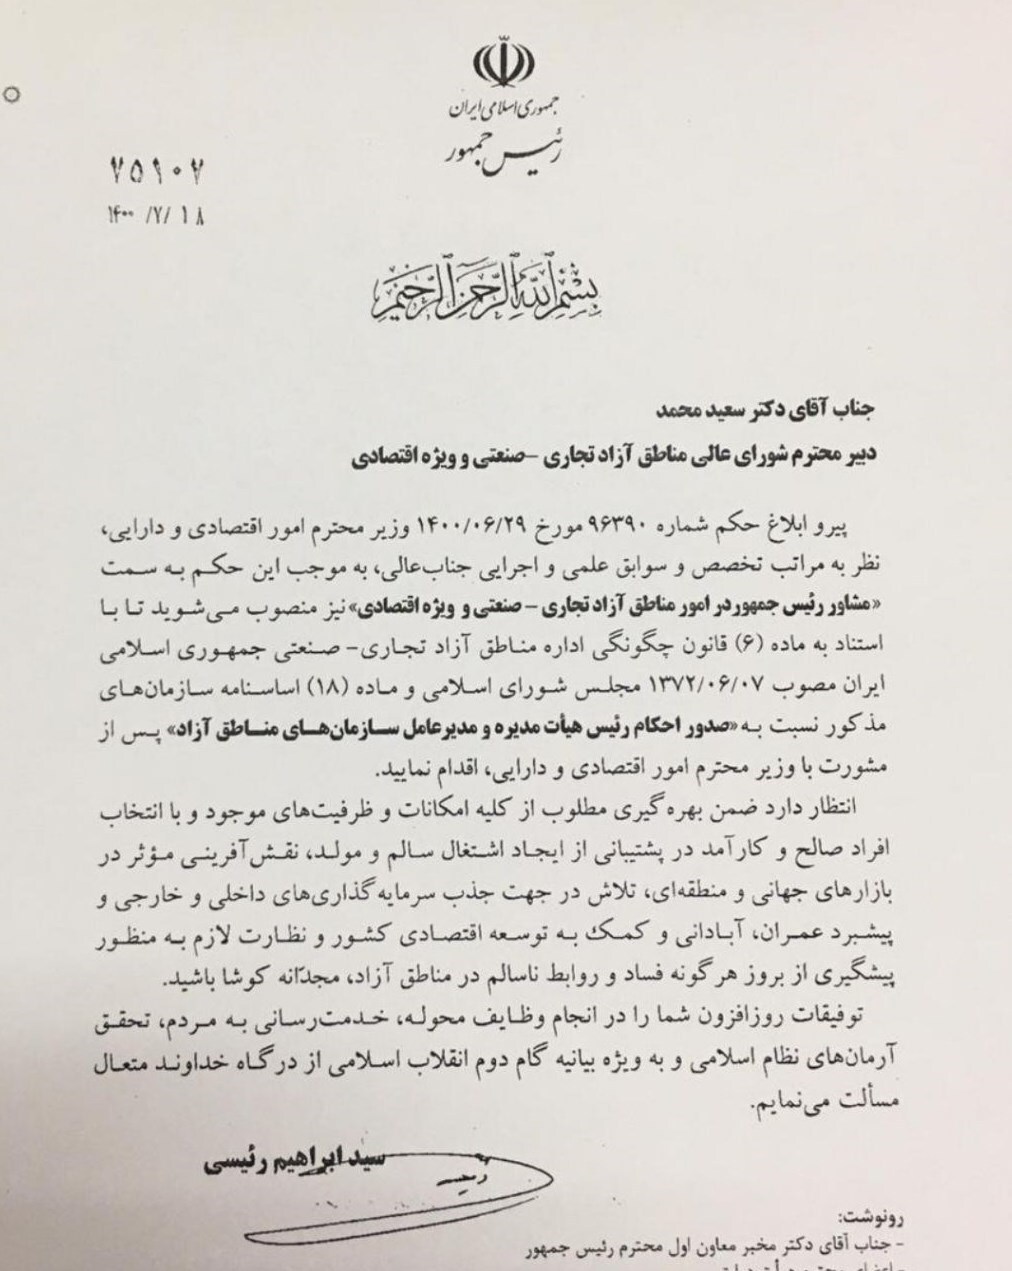 سعید محمد مشاور رییس جمهور شد/ دستور رئیسی برای مقابله با روابط ناسالم در مناطق آزاد